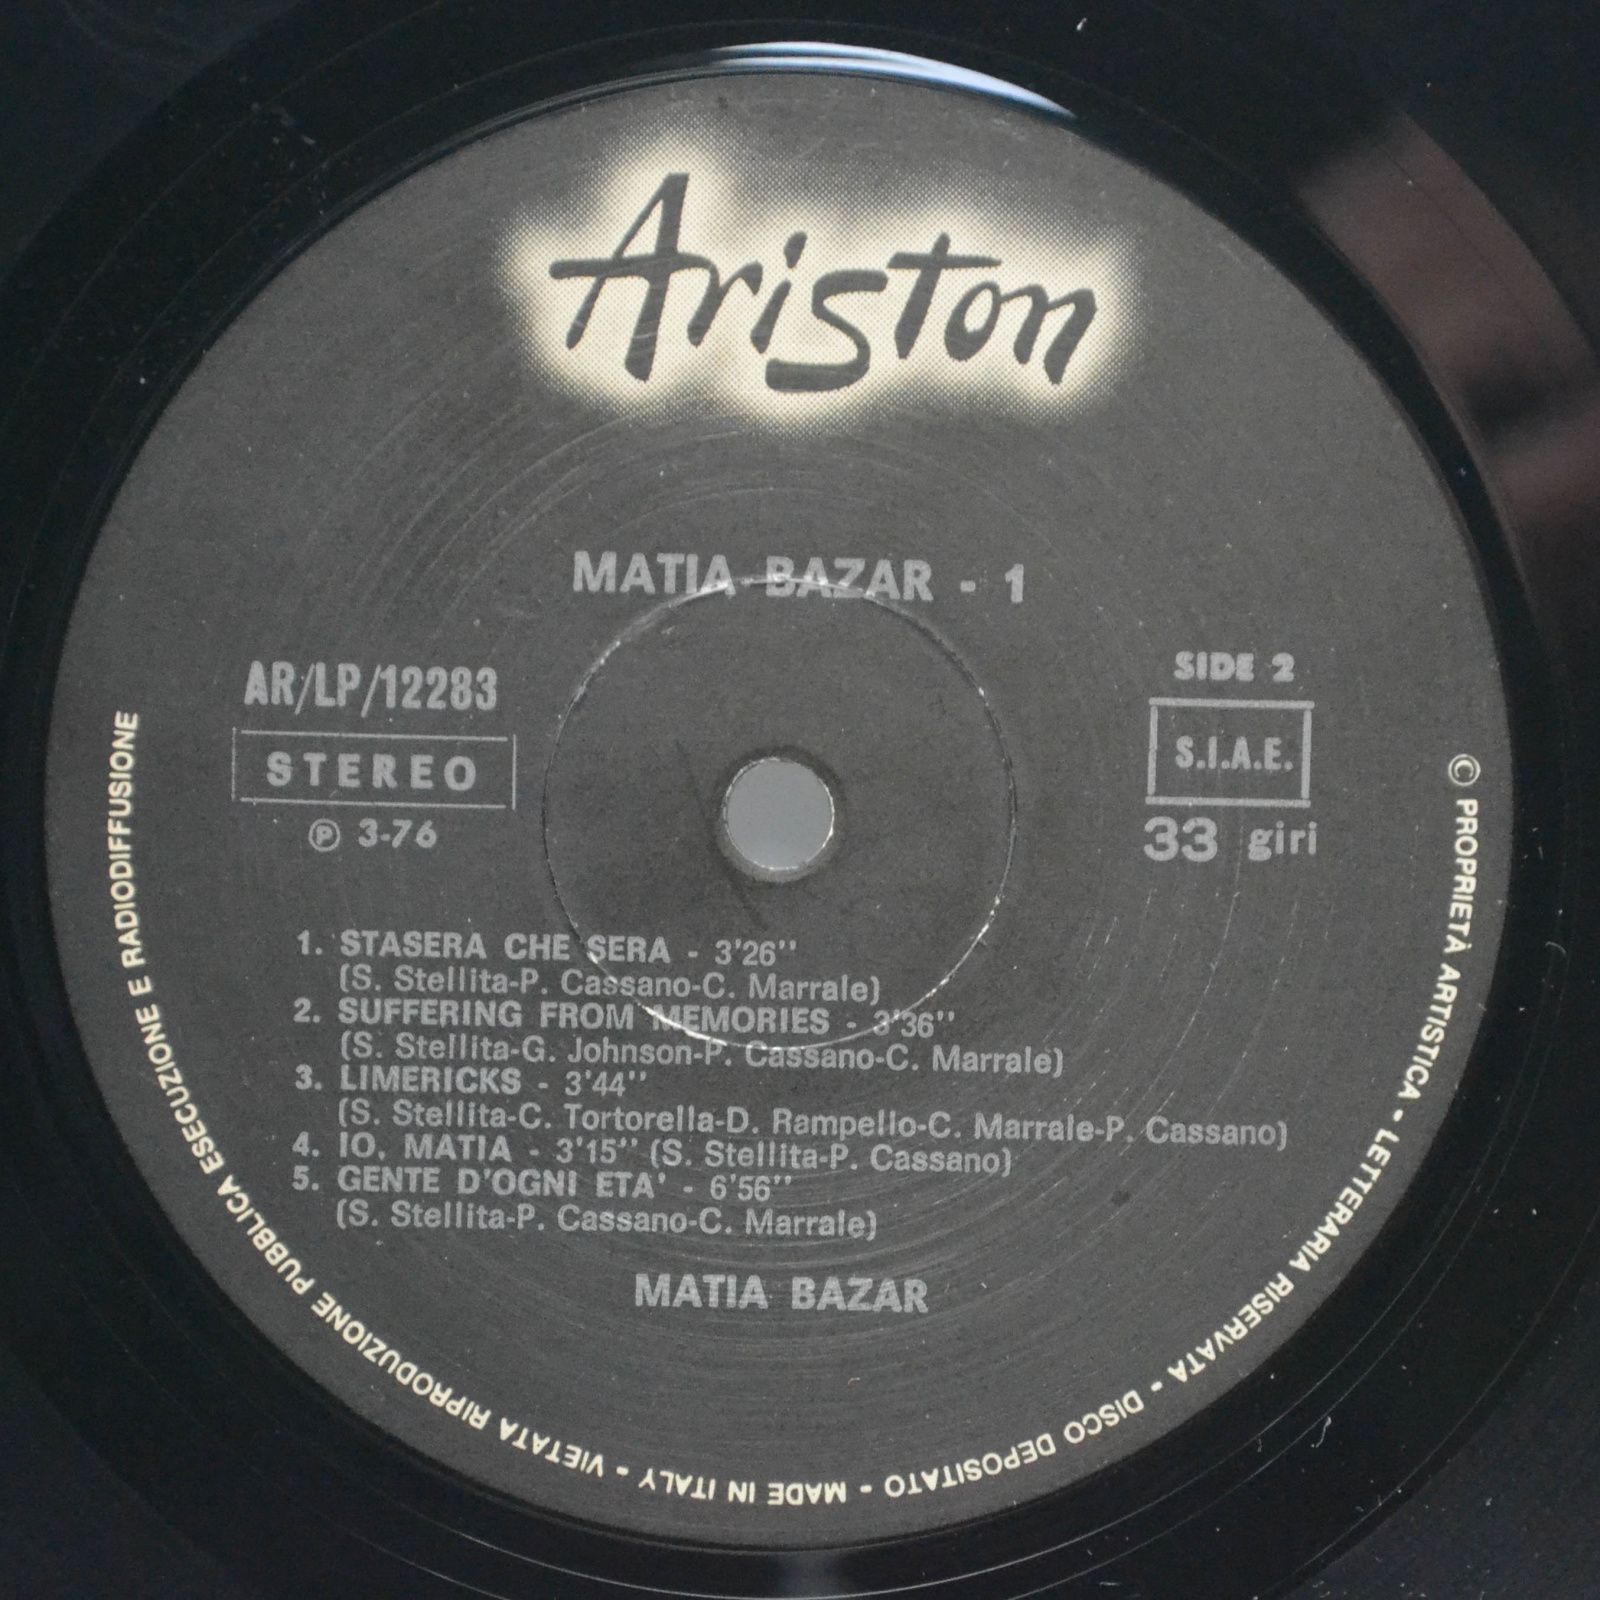 Matia Bazar — Matia Bazar 1 (1-st, Italy), 1976